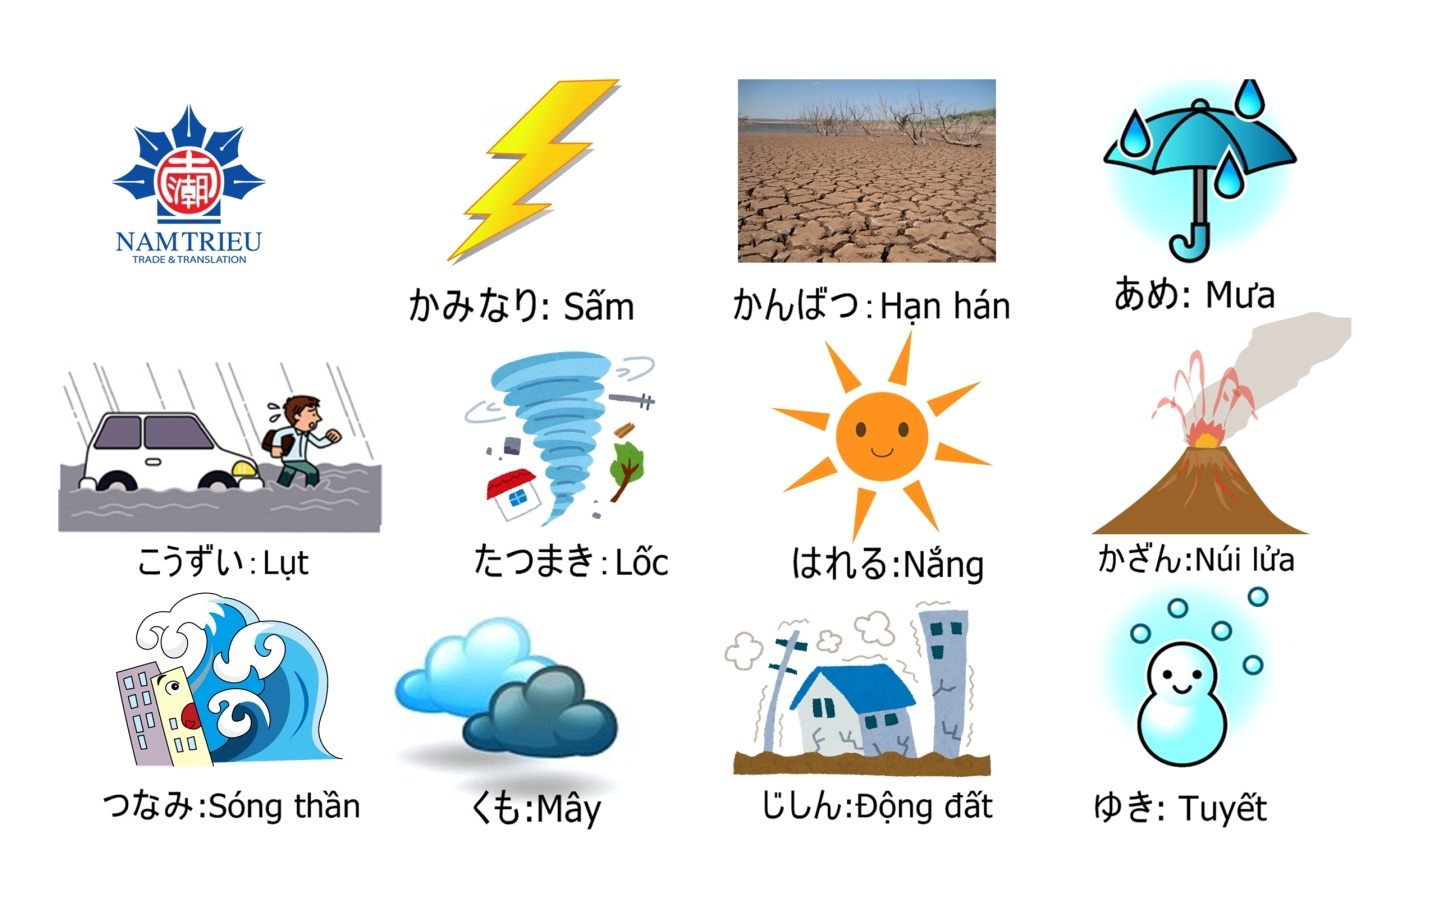 Học tiếng Nhật qua hình ảnh